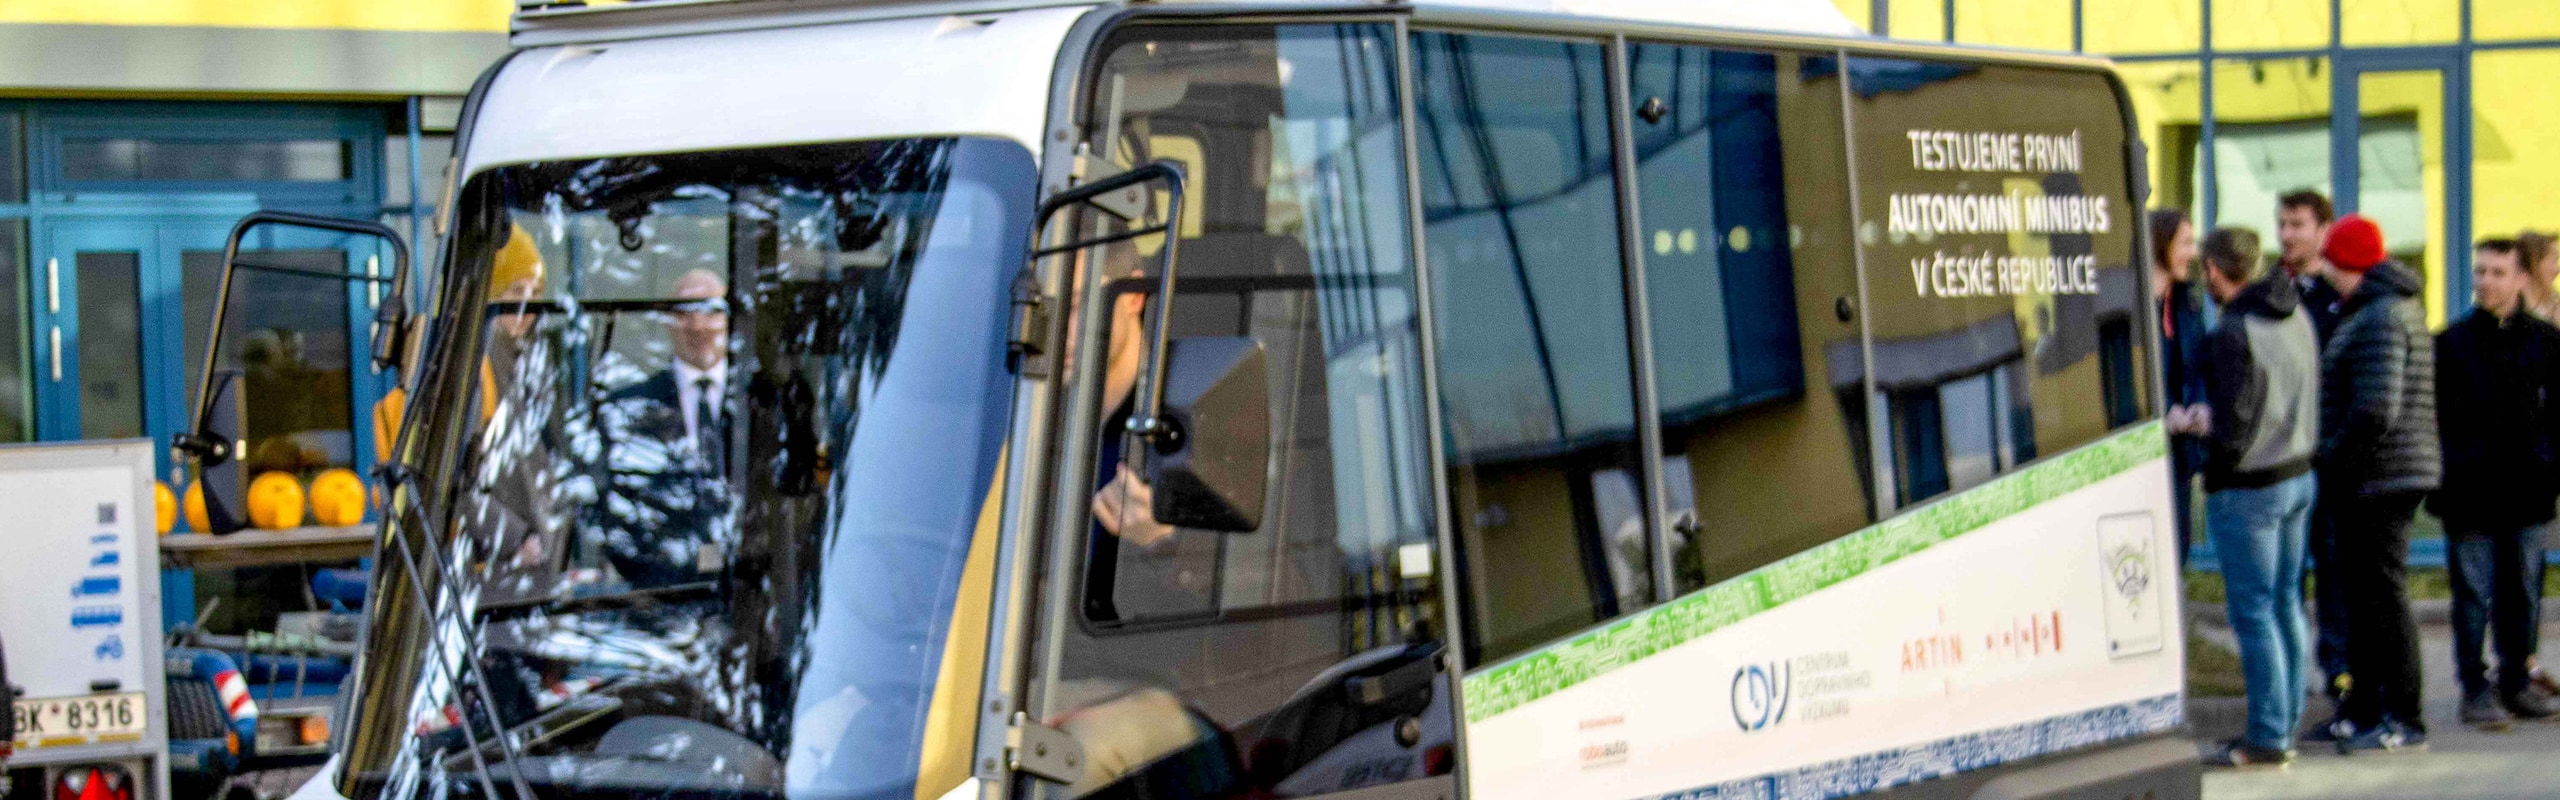 Carousel: V Brně se bude testovat první autonomní minibus